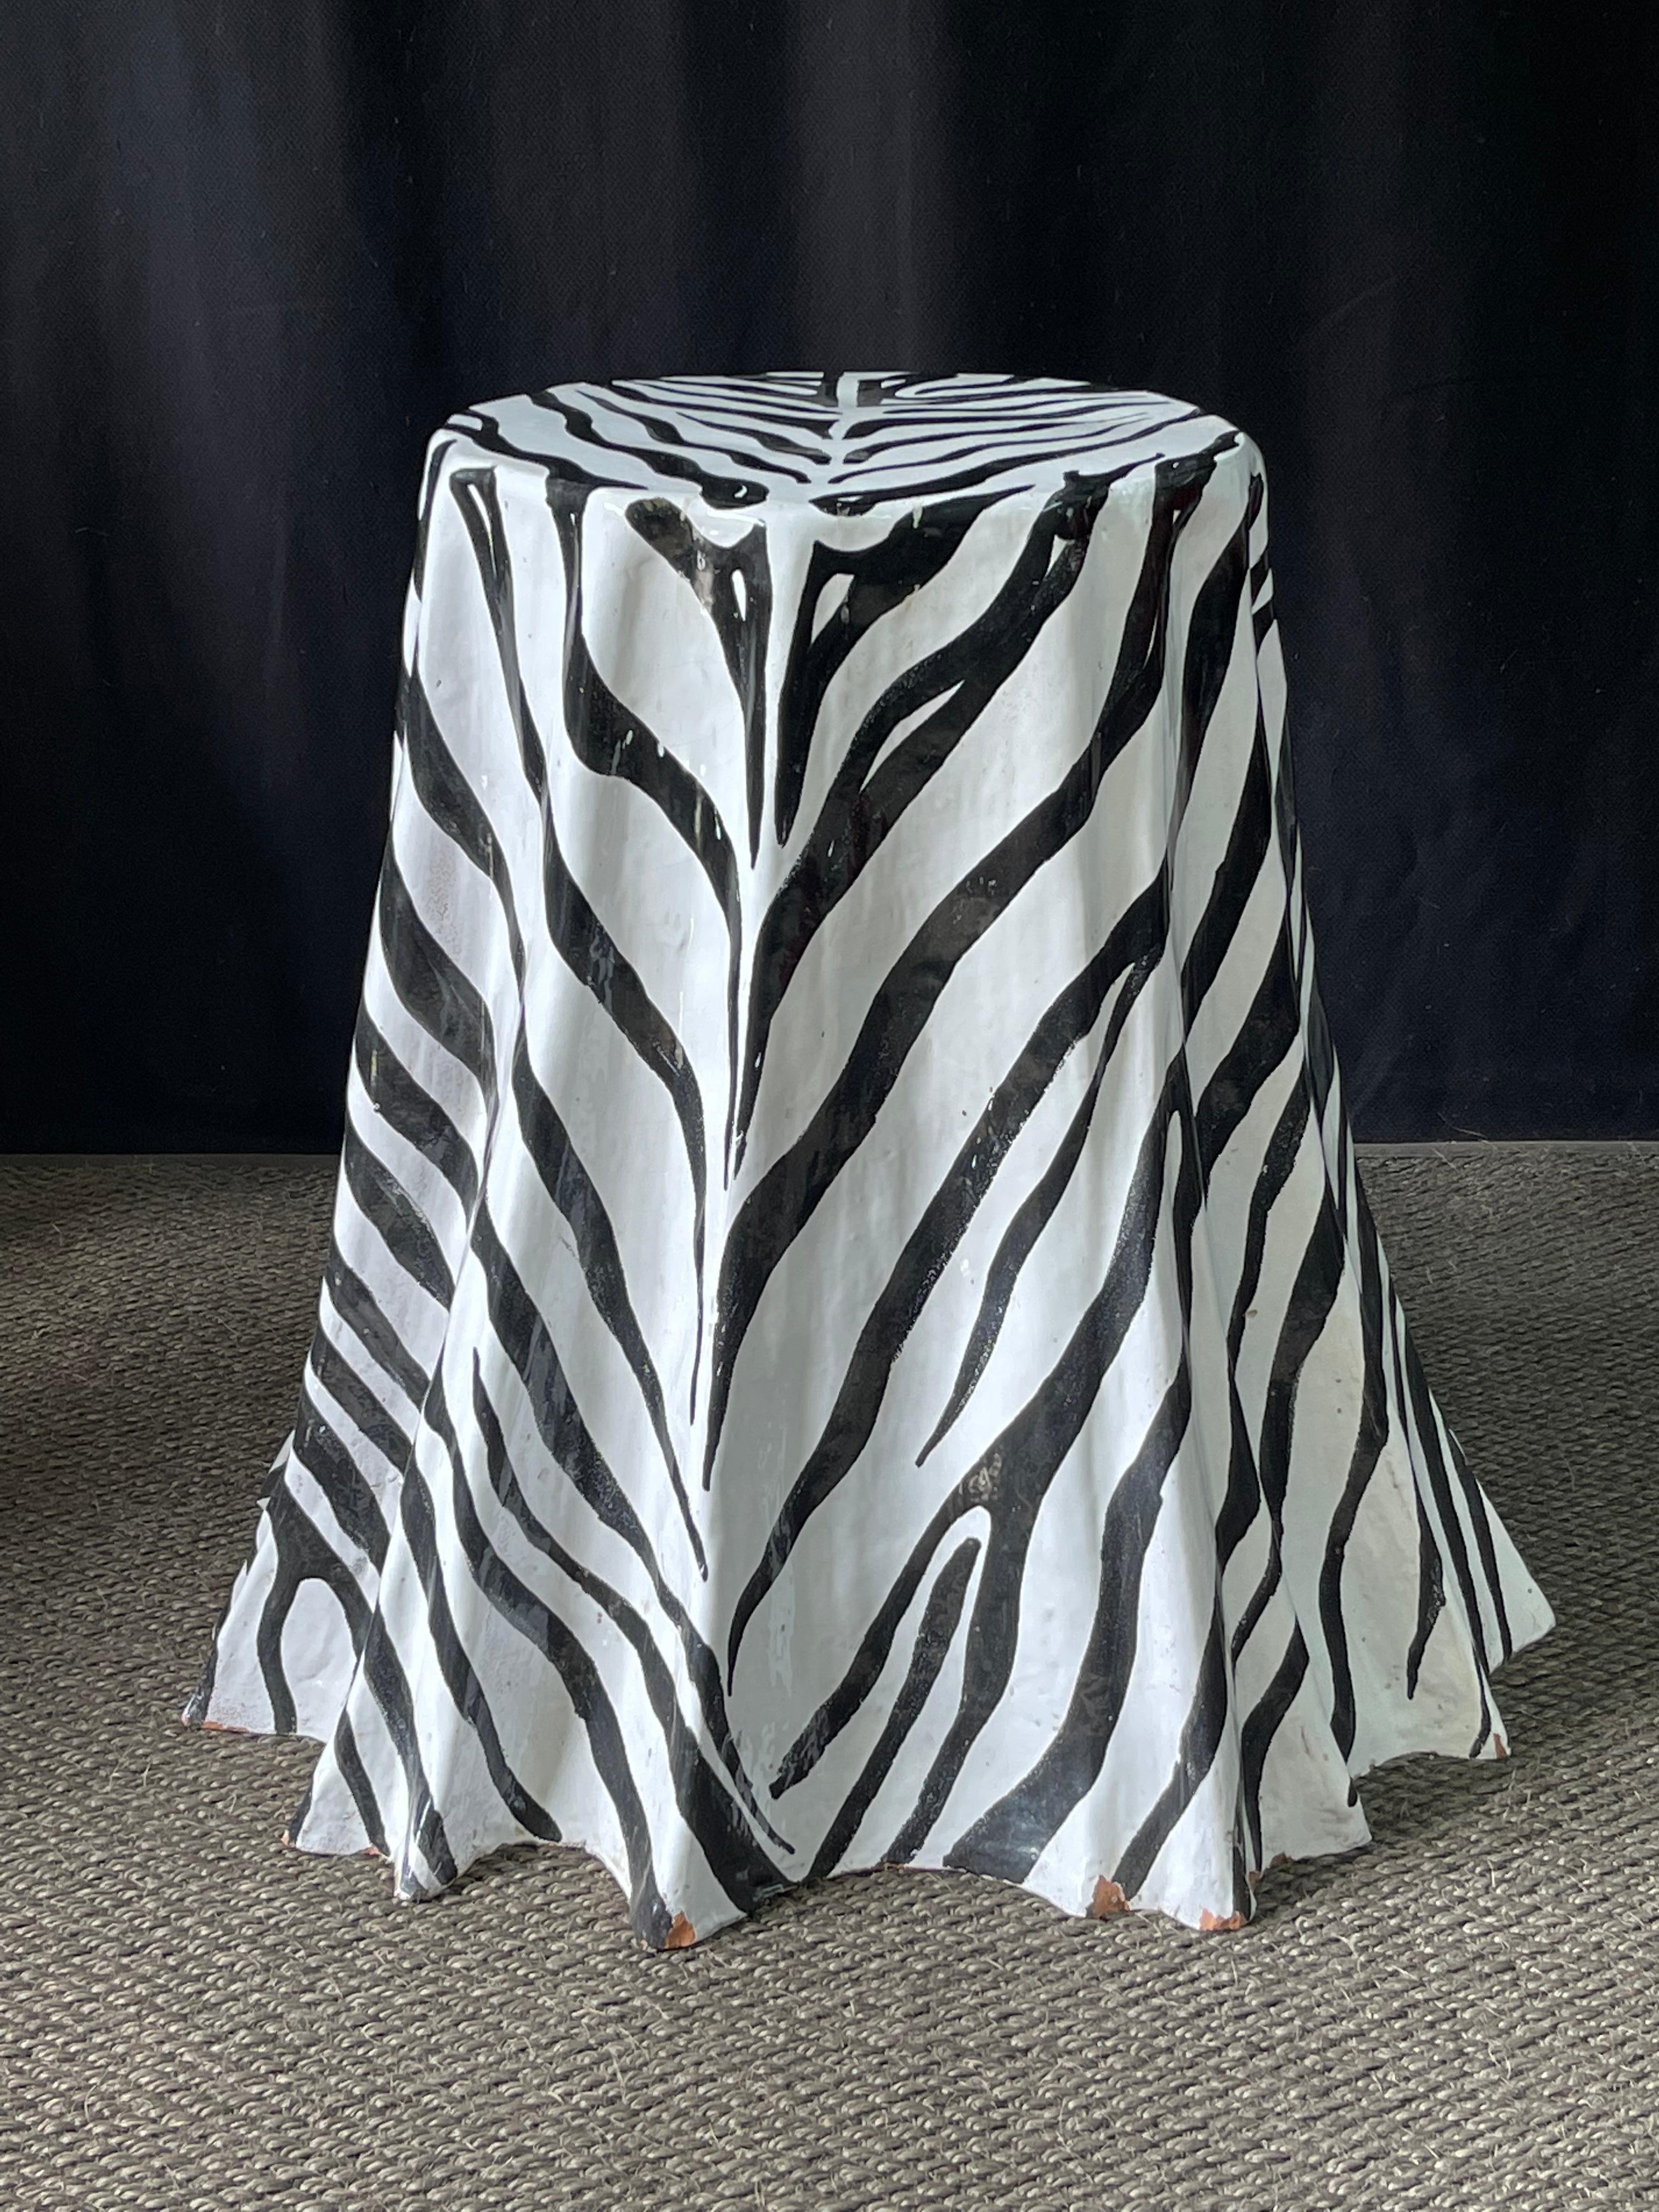 Vintage Italian Terracotta Faux Skirted Table in Zebra Glazed Finish For Sale 3